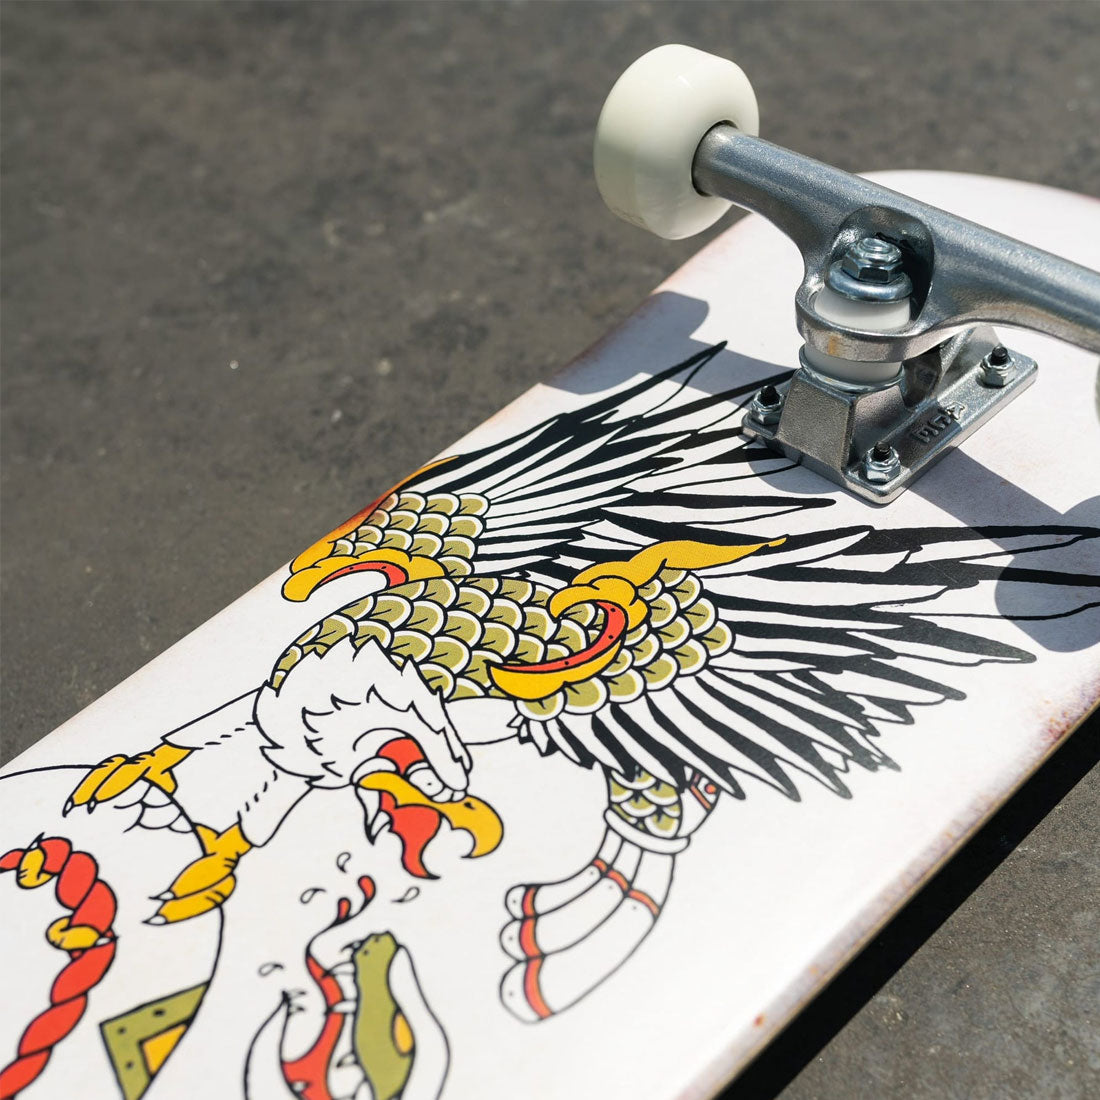 Z-Flex Eagle 8.25 Complete Skateboard Completes Modern Street